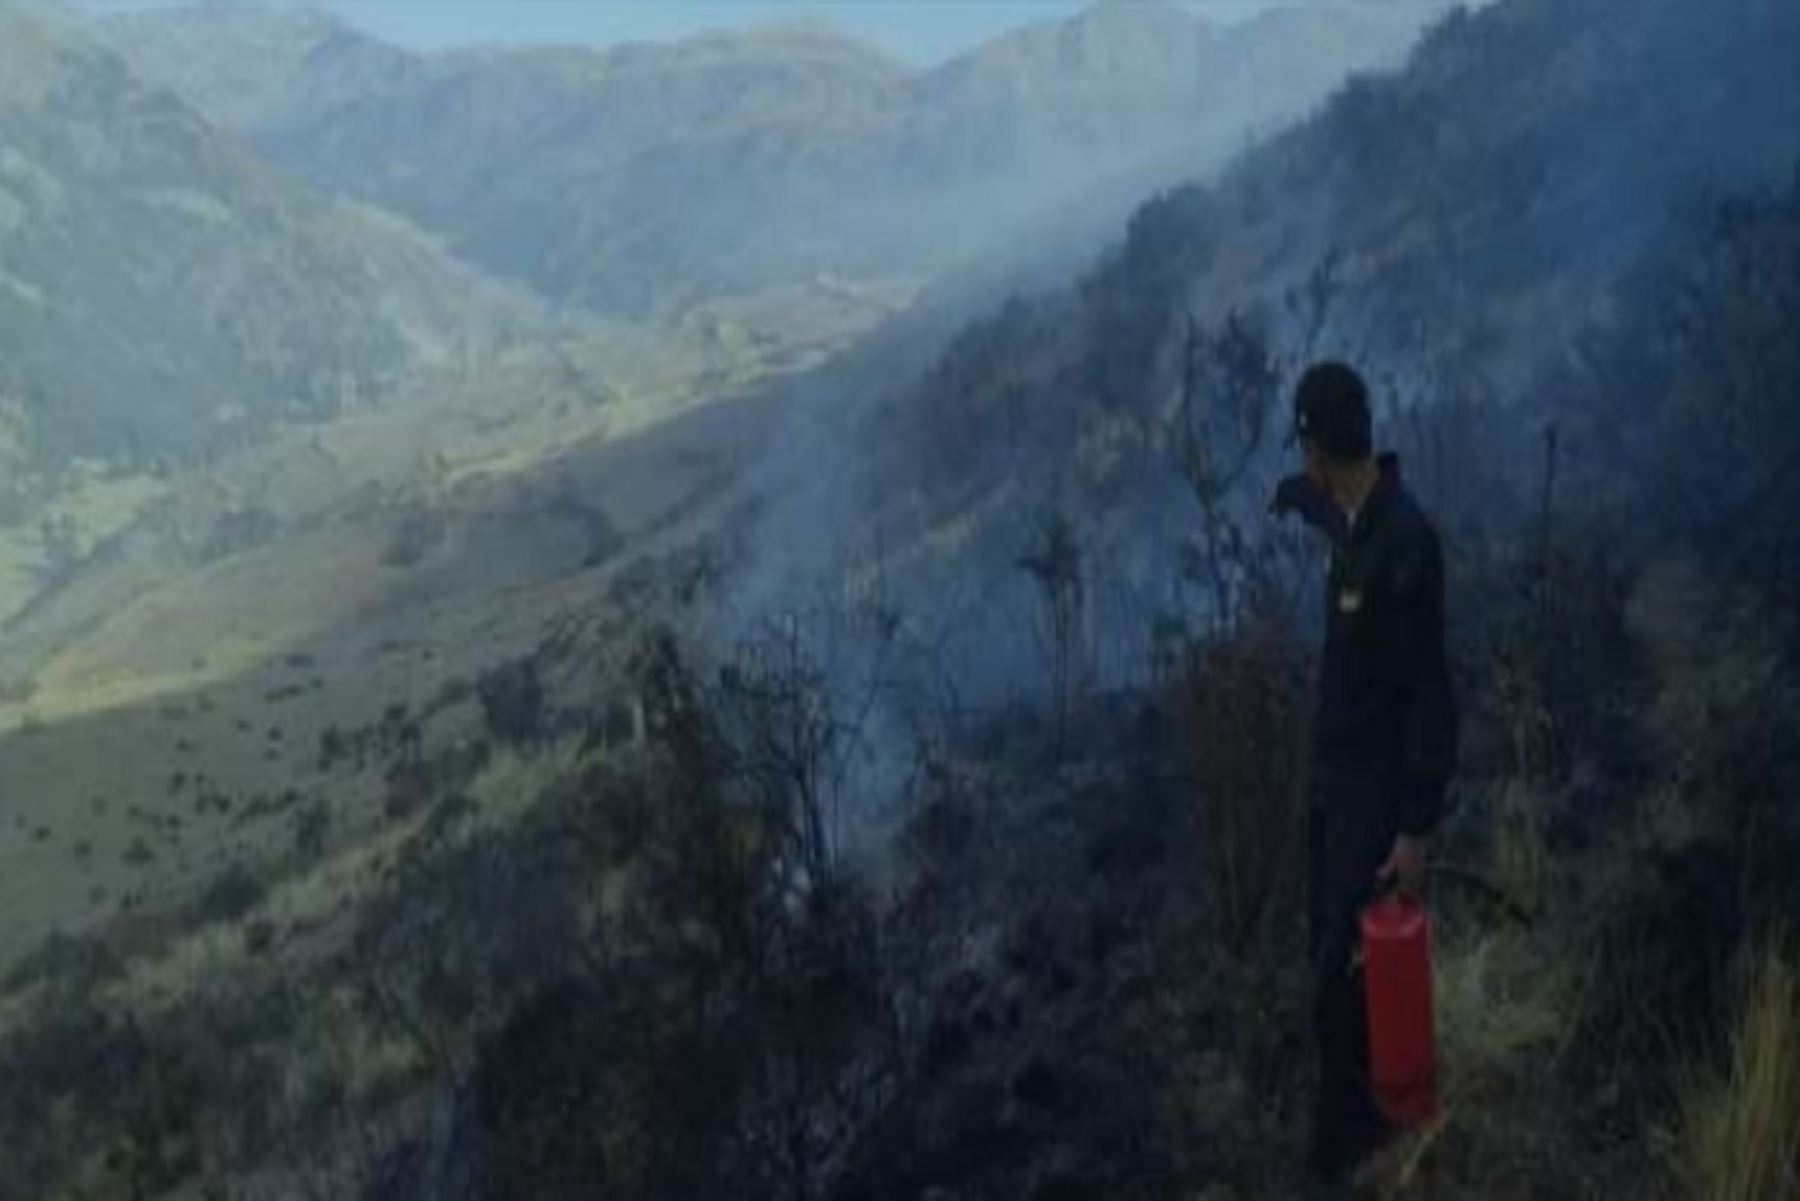 Al menos 10 hectáreas de cobertura natural fueron destruidas por el incendio forestal que se originó la tarde de ayer en el Cerro Cangalli, comunidad campesina de Cangalli, en el distrito de Checacupe, provincia de Canchis, región Cusco, informó eI Instituto Nacional de Defensa Civil (Indeci).